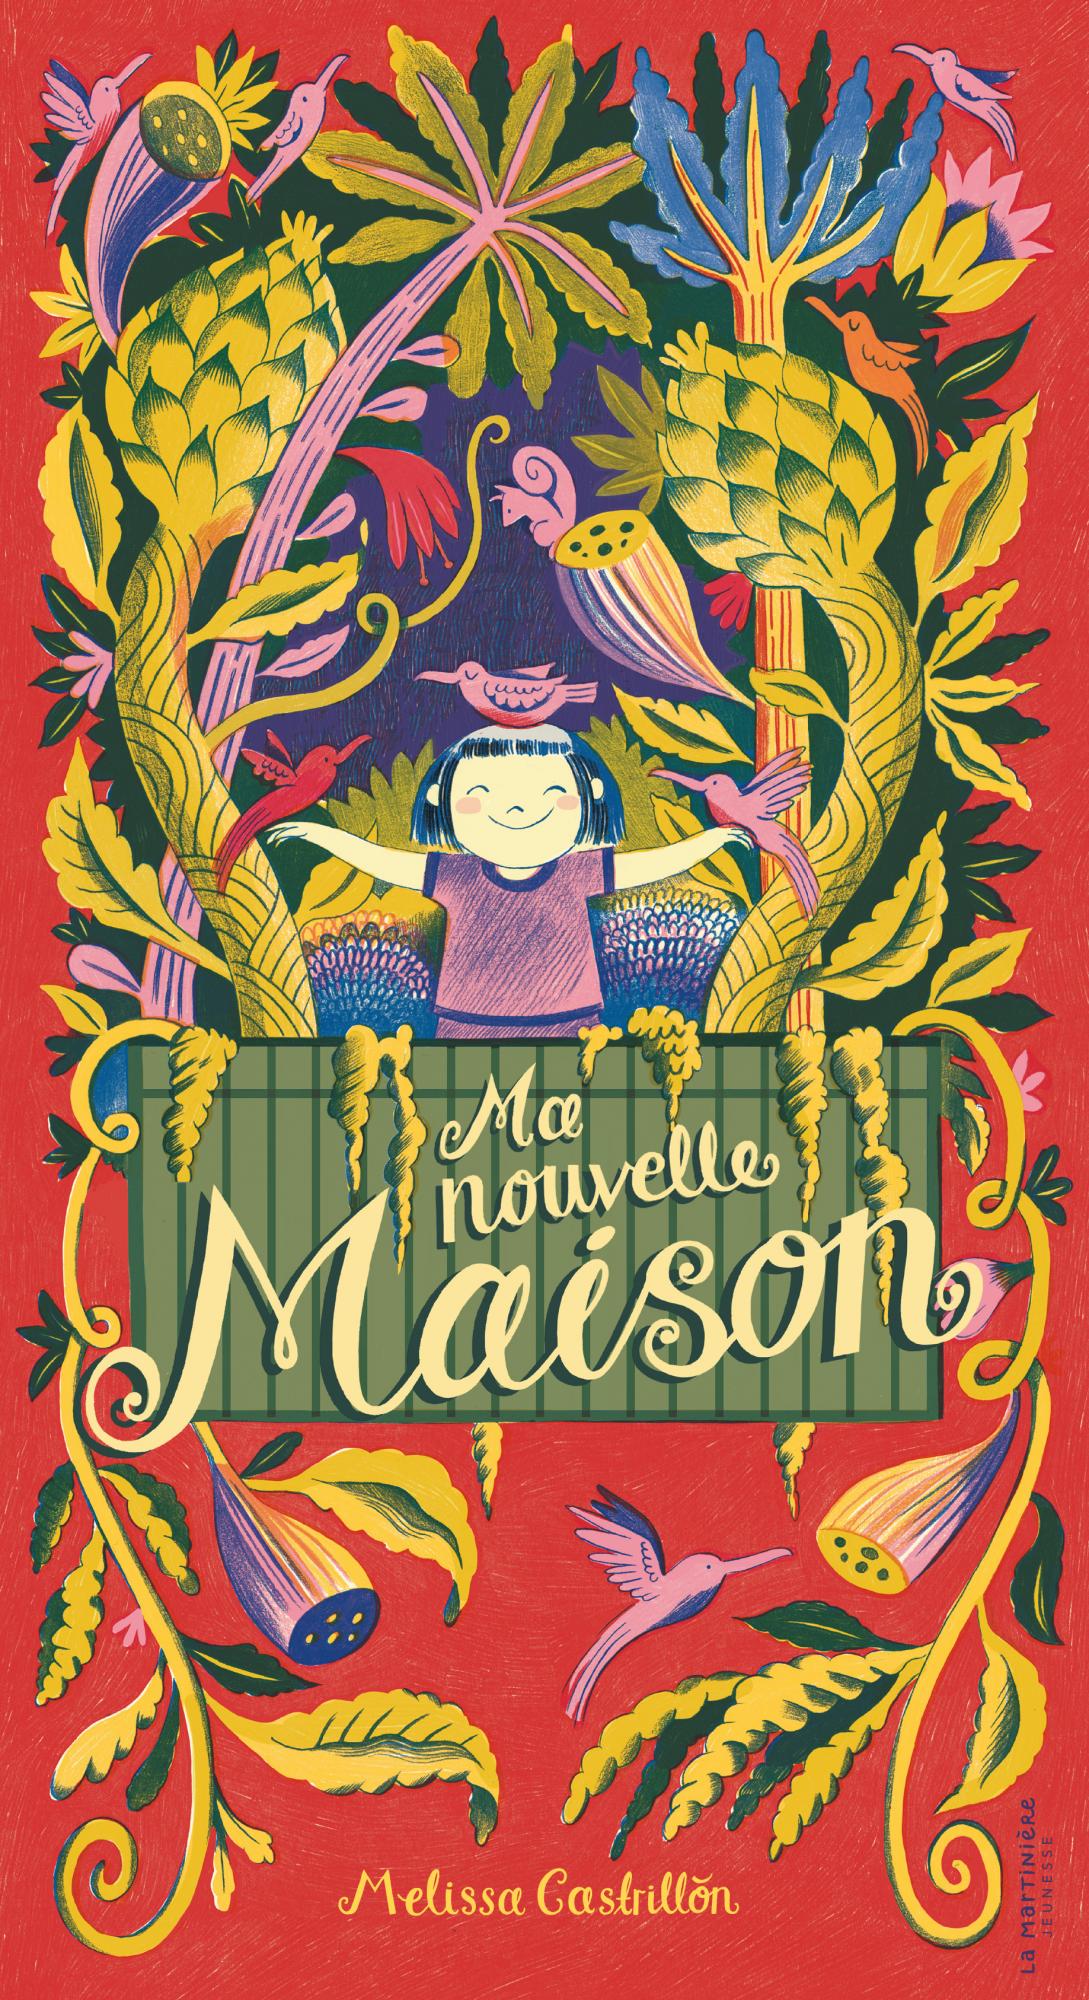 Ma magie à moi - Livre enfant - livre éditions Nathan – French Blossom